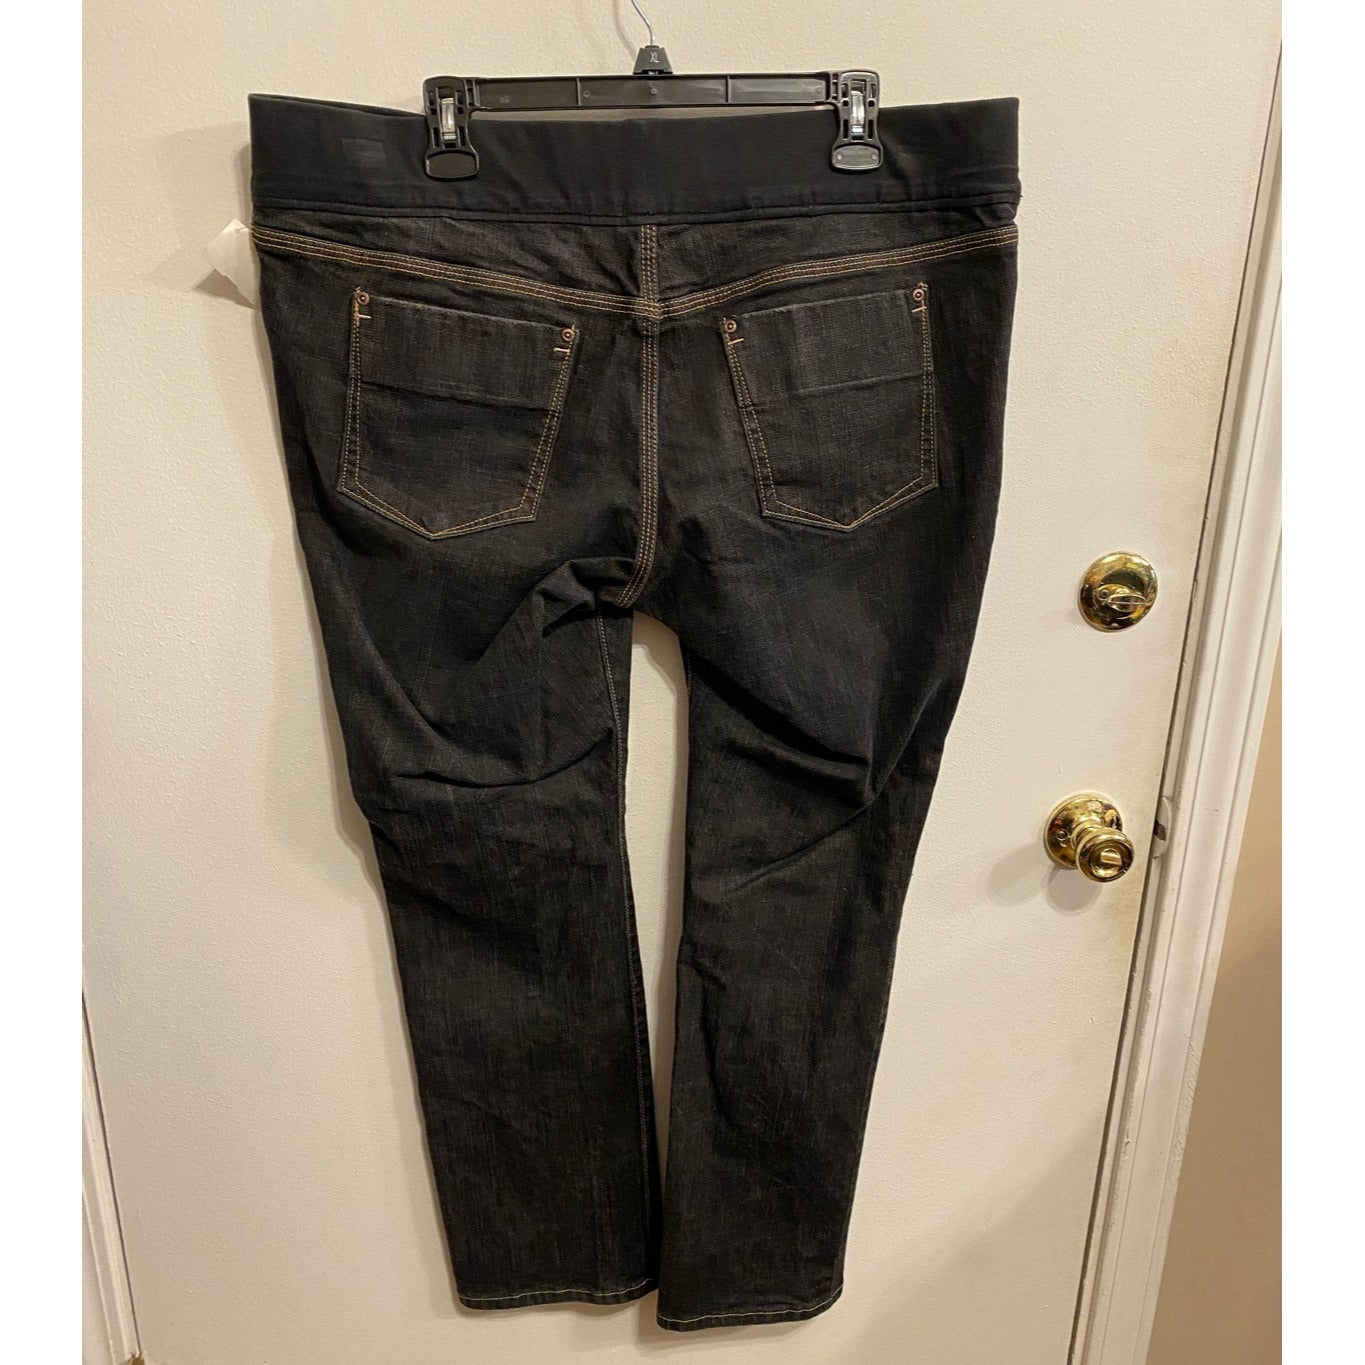 Size 18 Old Navy black maternity Jeans